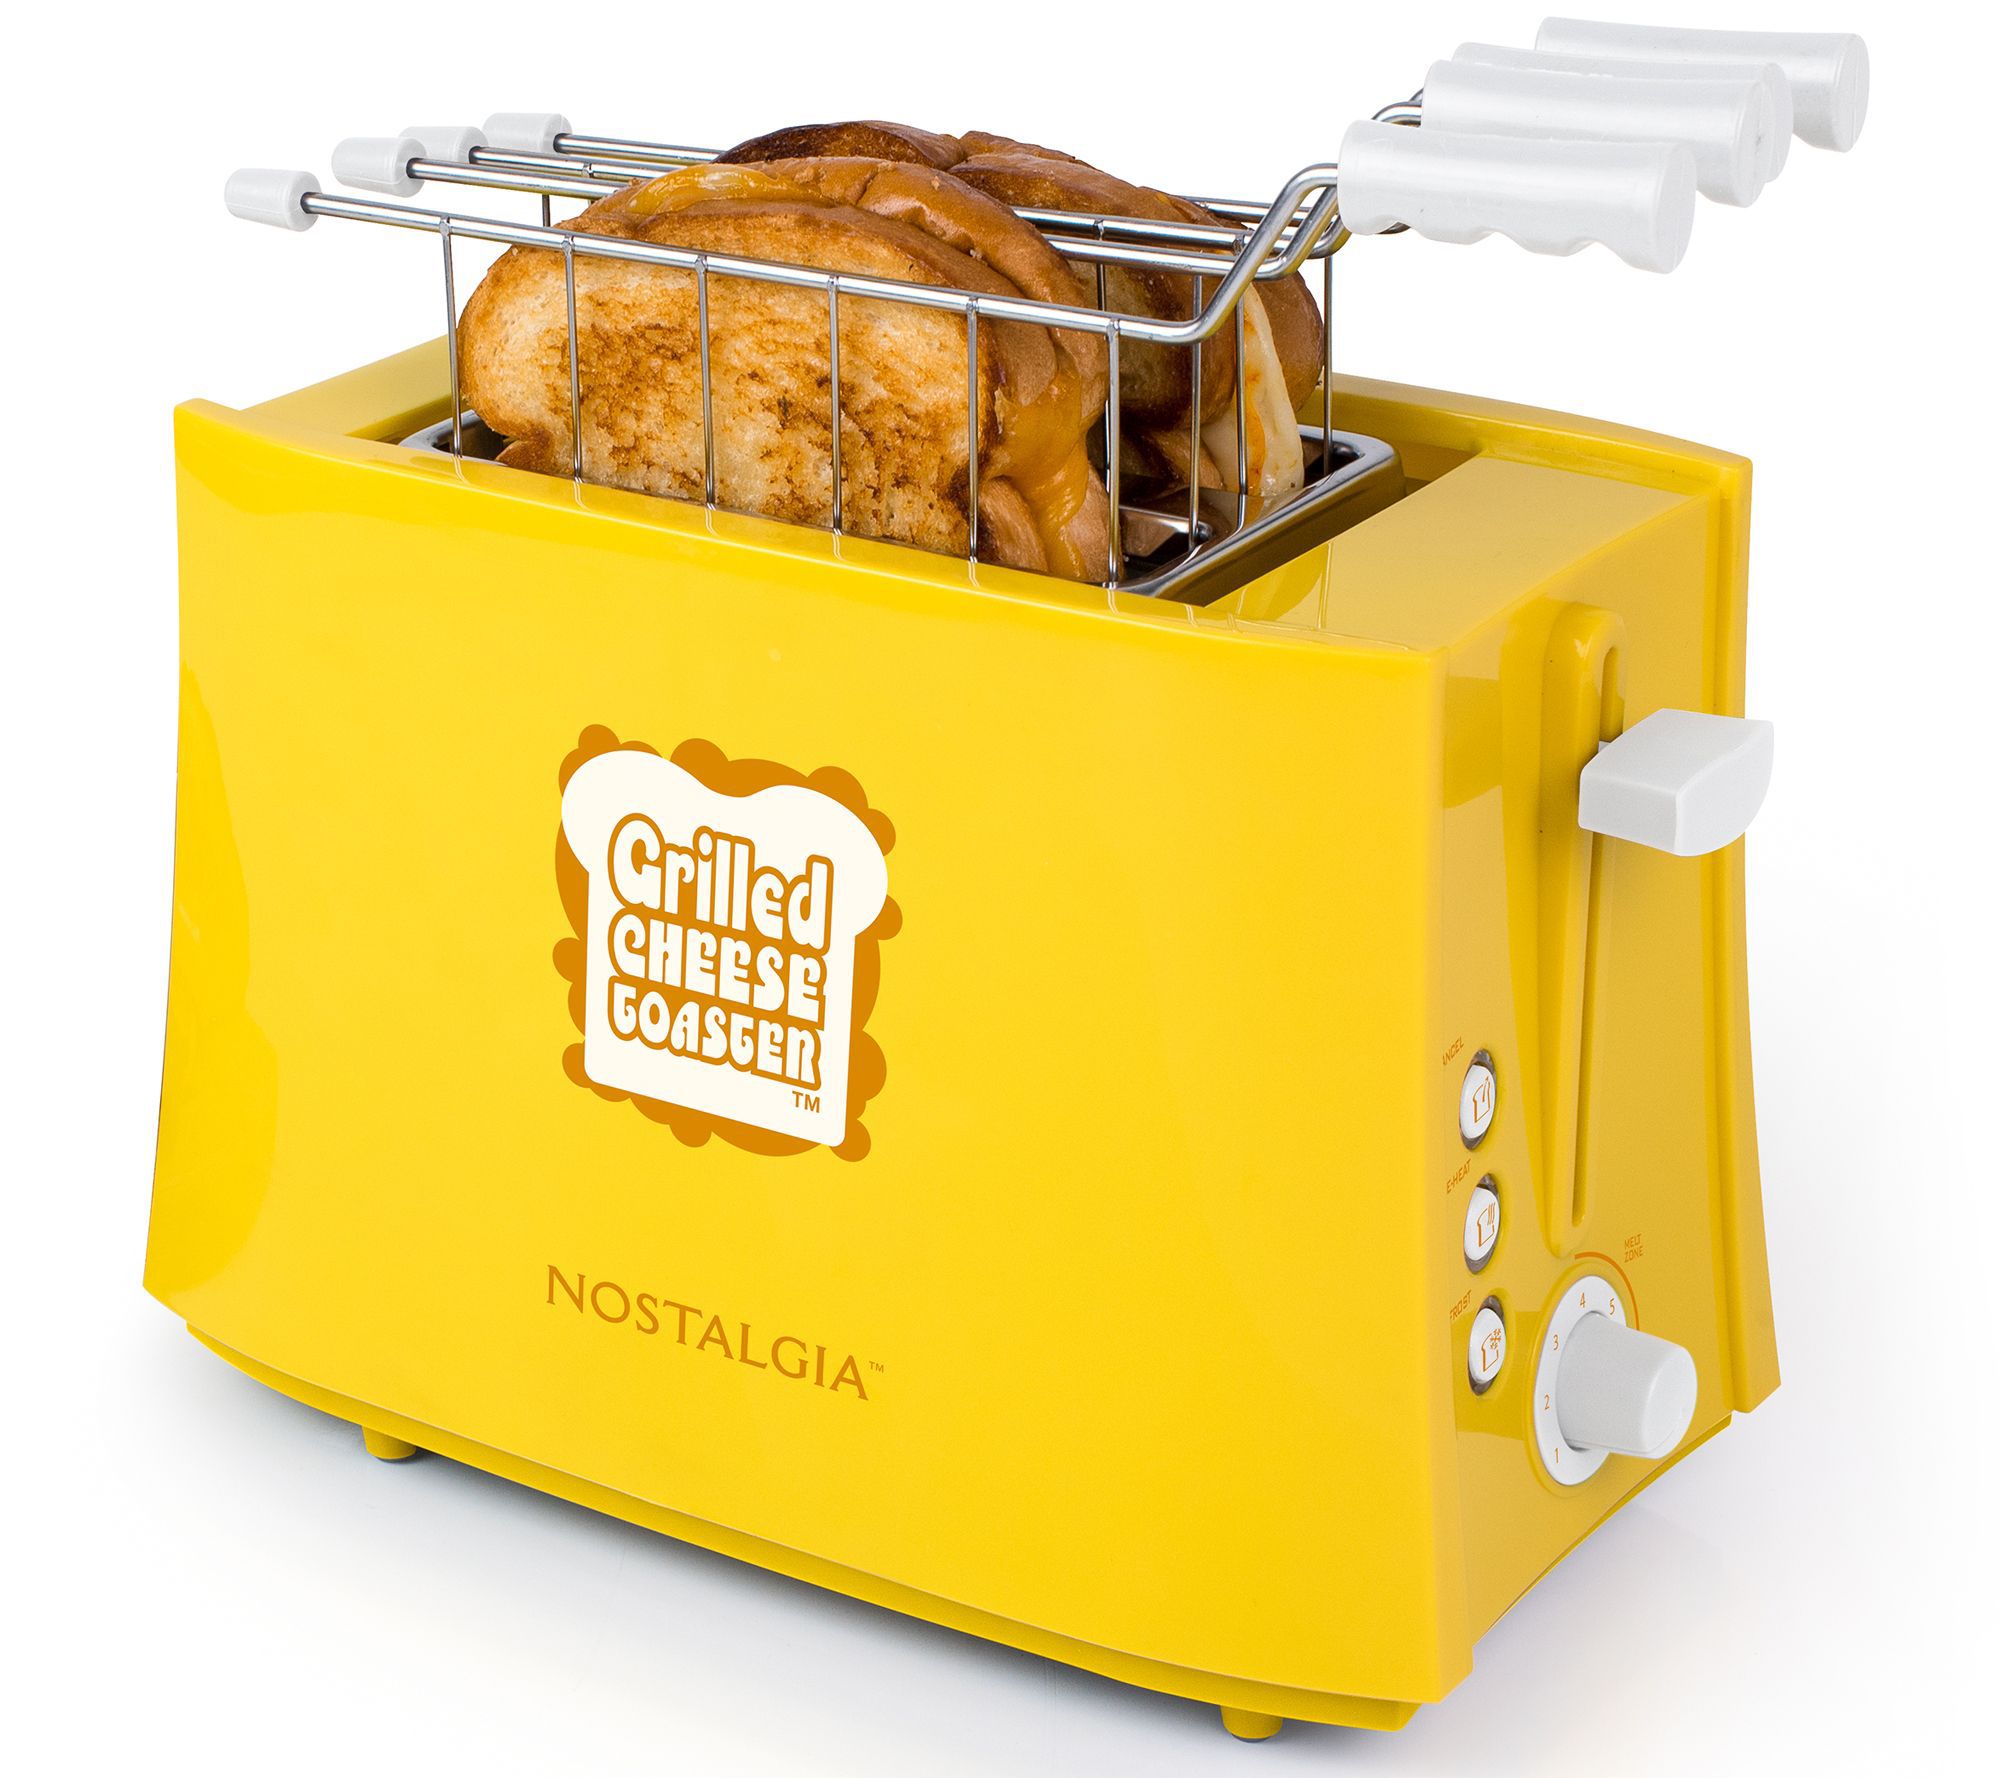 Nostalgia My Mini single slice toaster